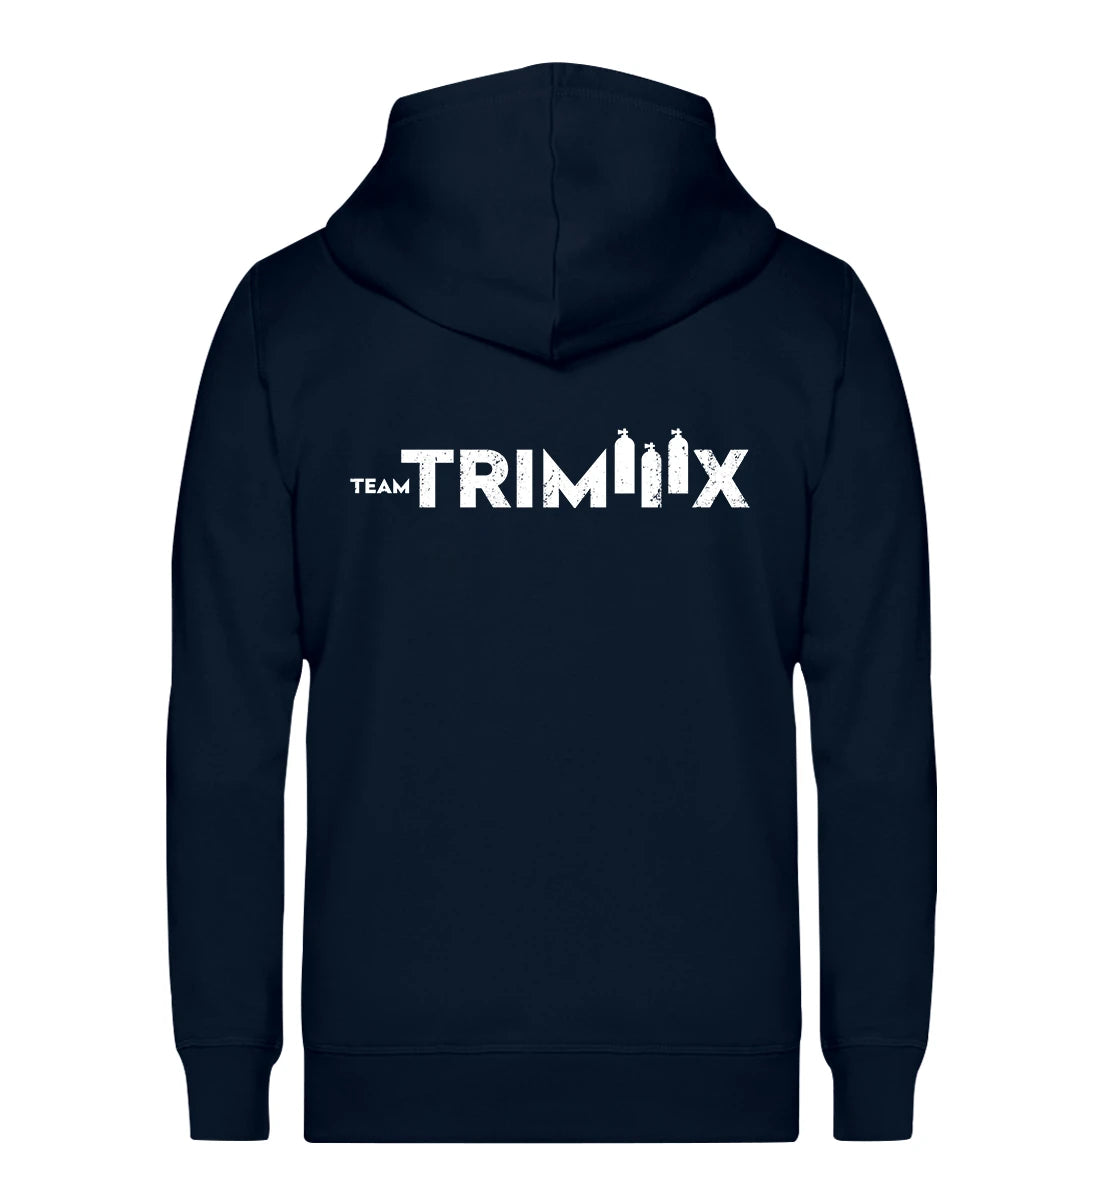 Team Trimiiix - Bio Zip Hoodie